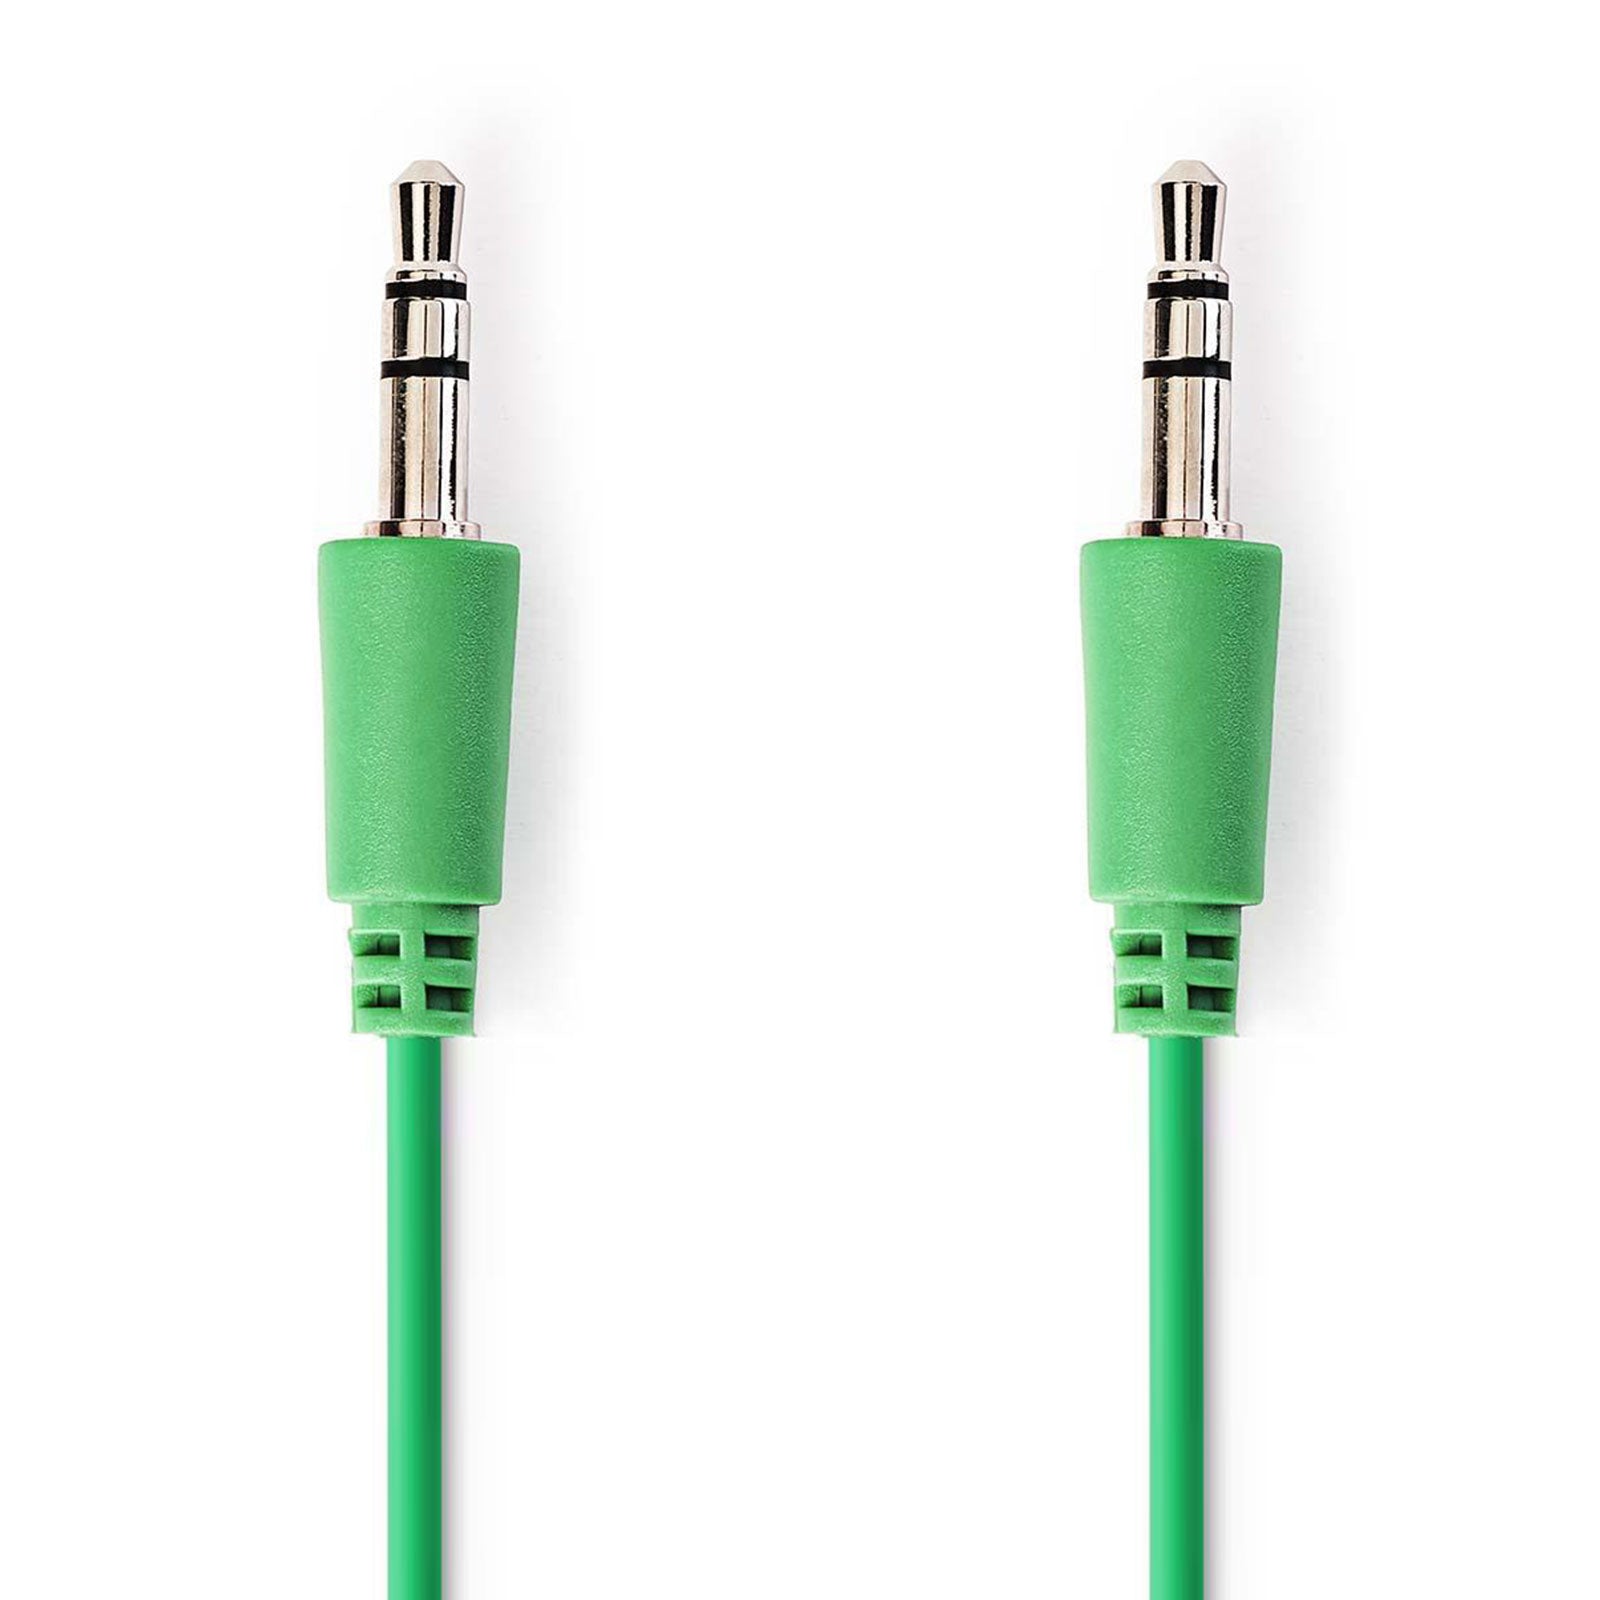 Audio Kabel, Klinken Stecker 3.5mm auf Stecker 3.5mm, 1 Meter, Grün, Robust, Vergoldet, MediaKabel